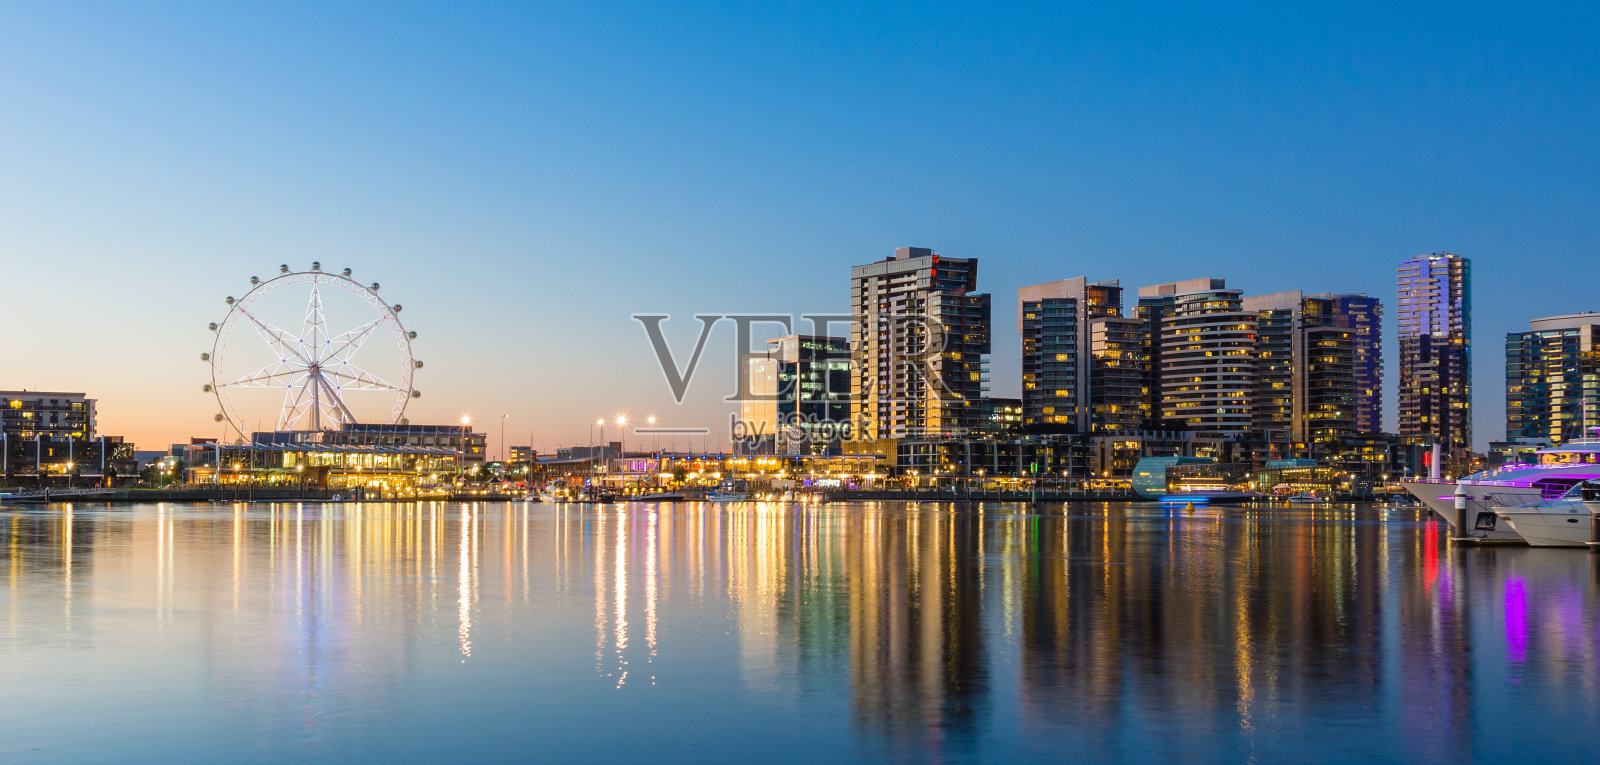 澳大利亚墨尔本码头区的全景图片照片摄影图片